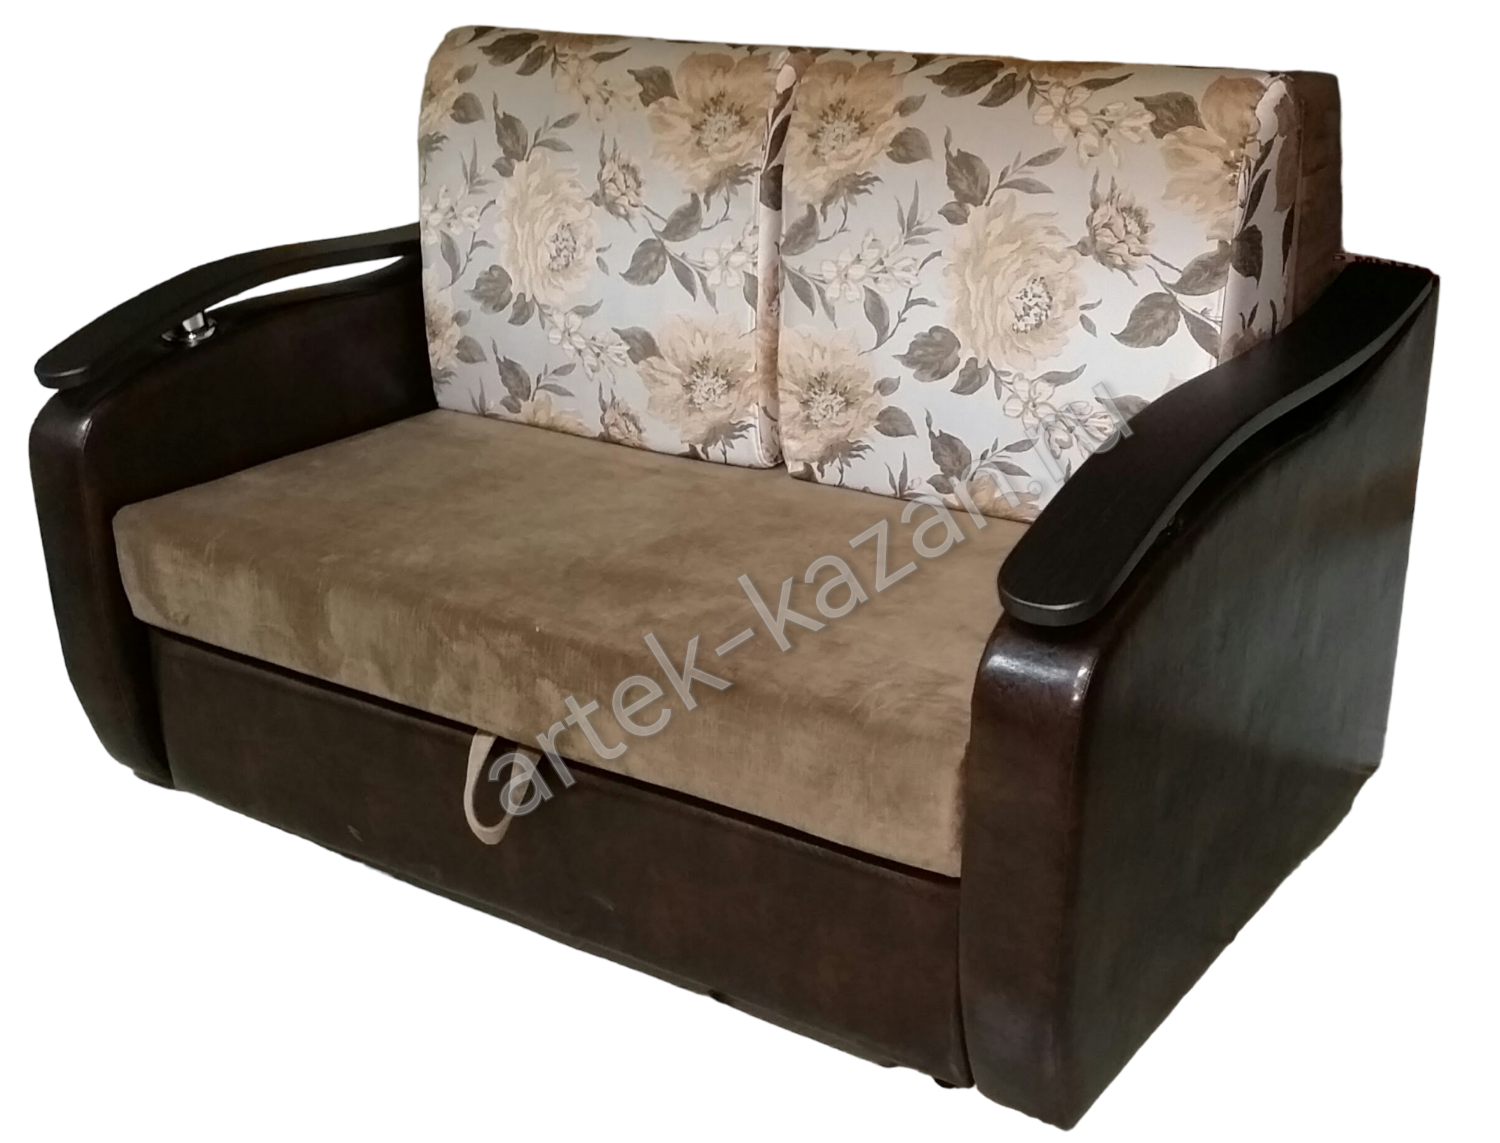 Мини диван на выкатном механизме Миник фото № 2. Купить недорогой диван по низкой цене от производителя можно у нас.